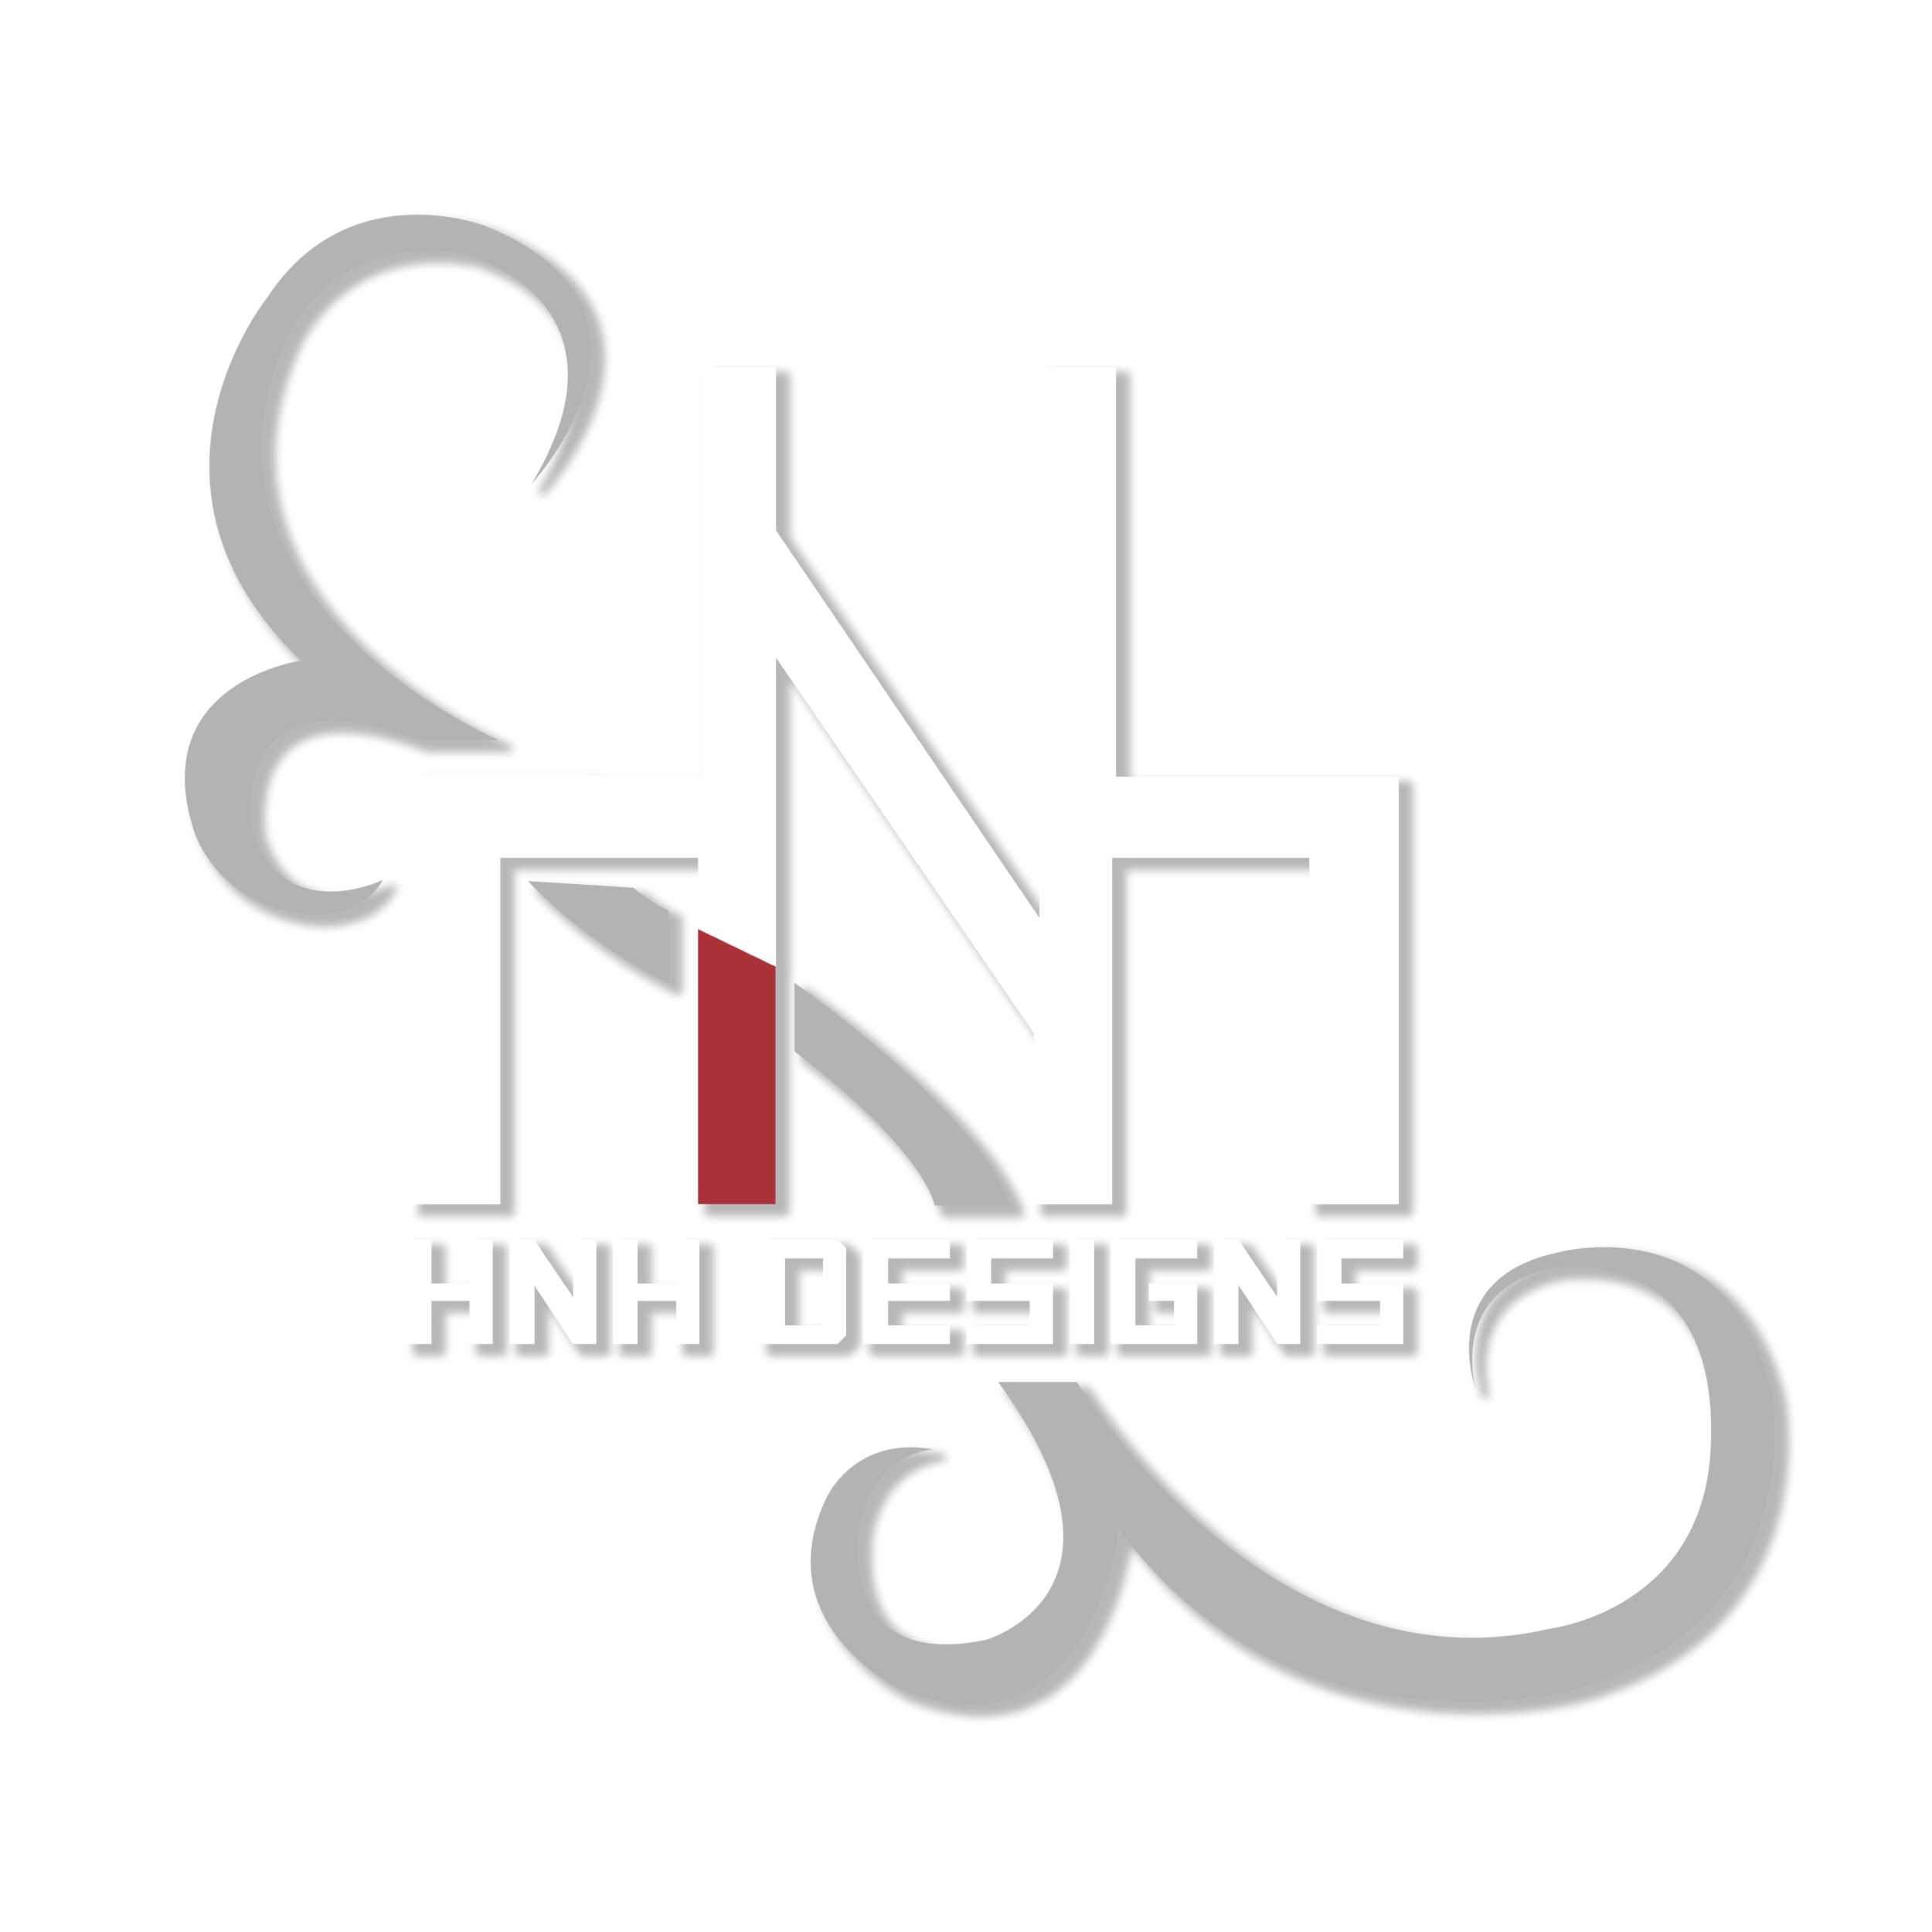 HNH